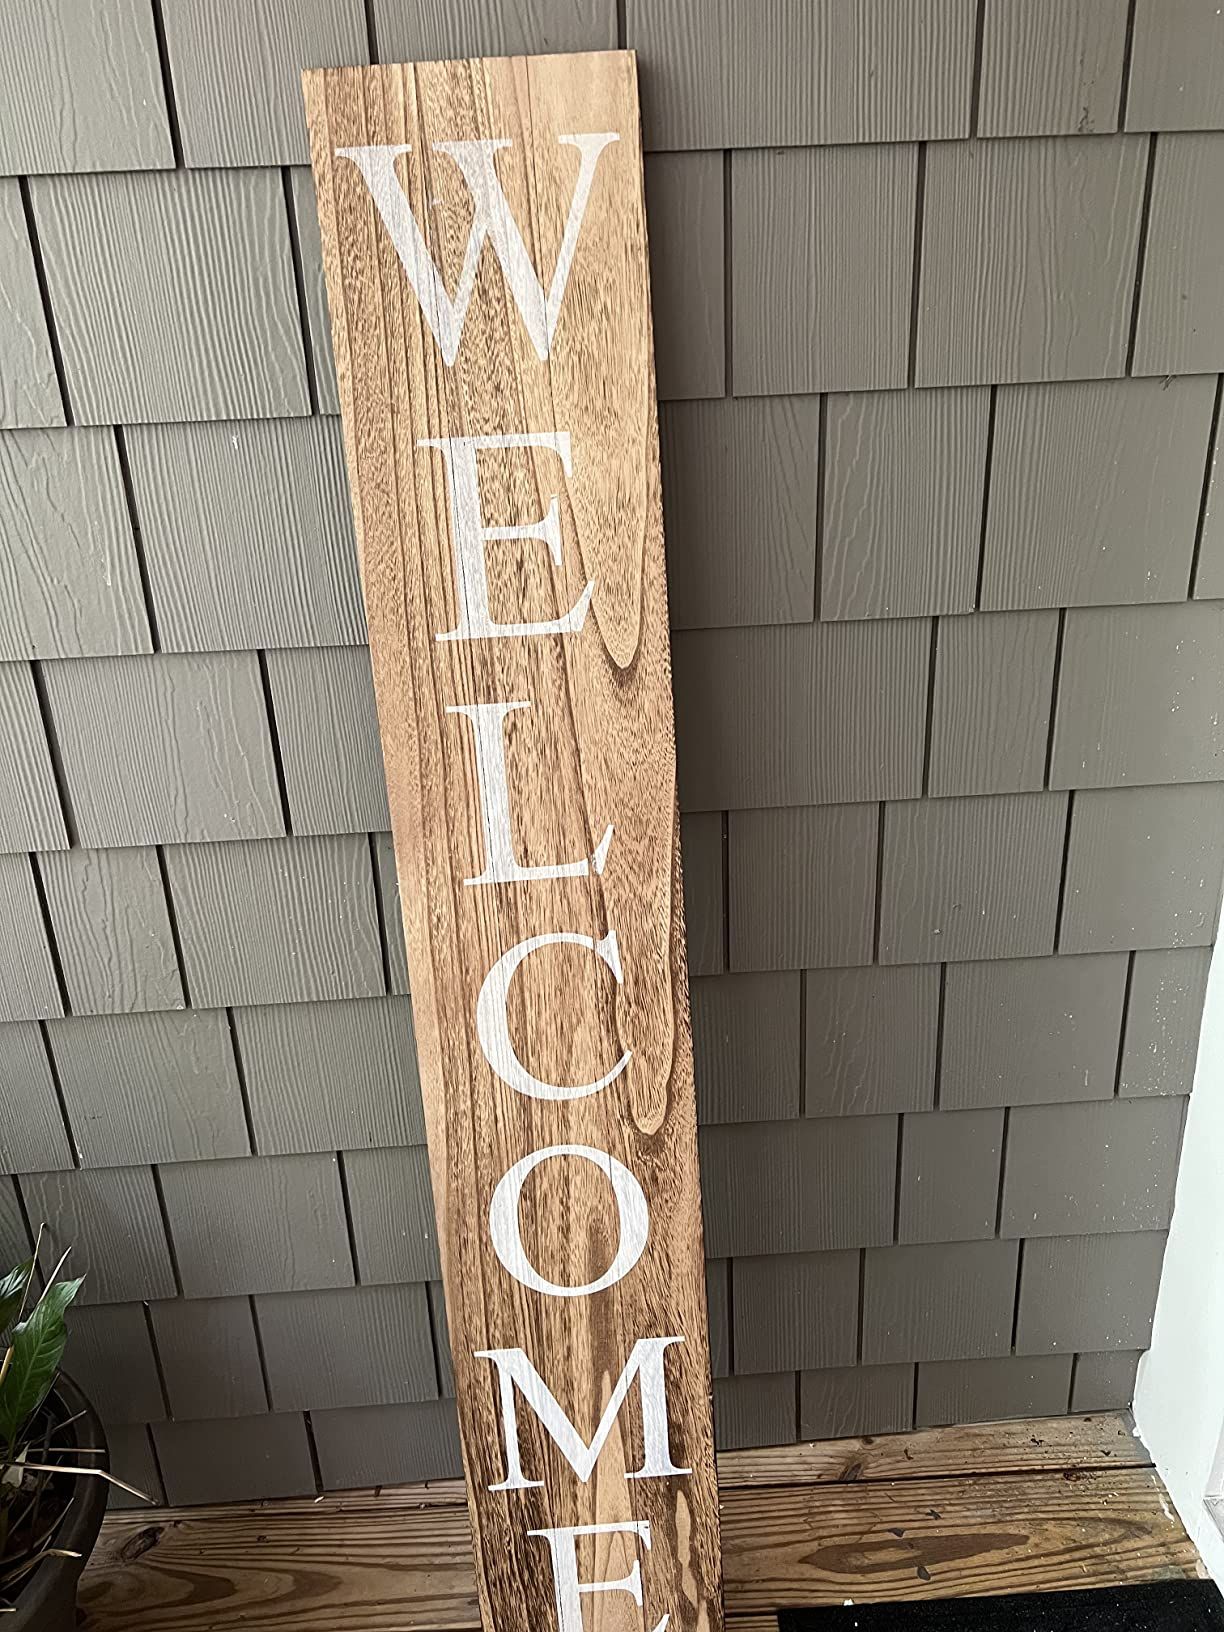 ALBEN Welcome Sign for Front Door Porch – 5 Feet Tall, Vertical Wooden Outdoor and Indoor Welco... | Amazon (US)